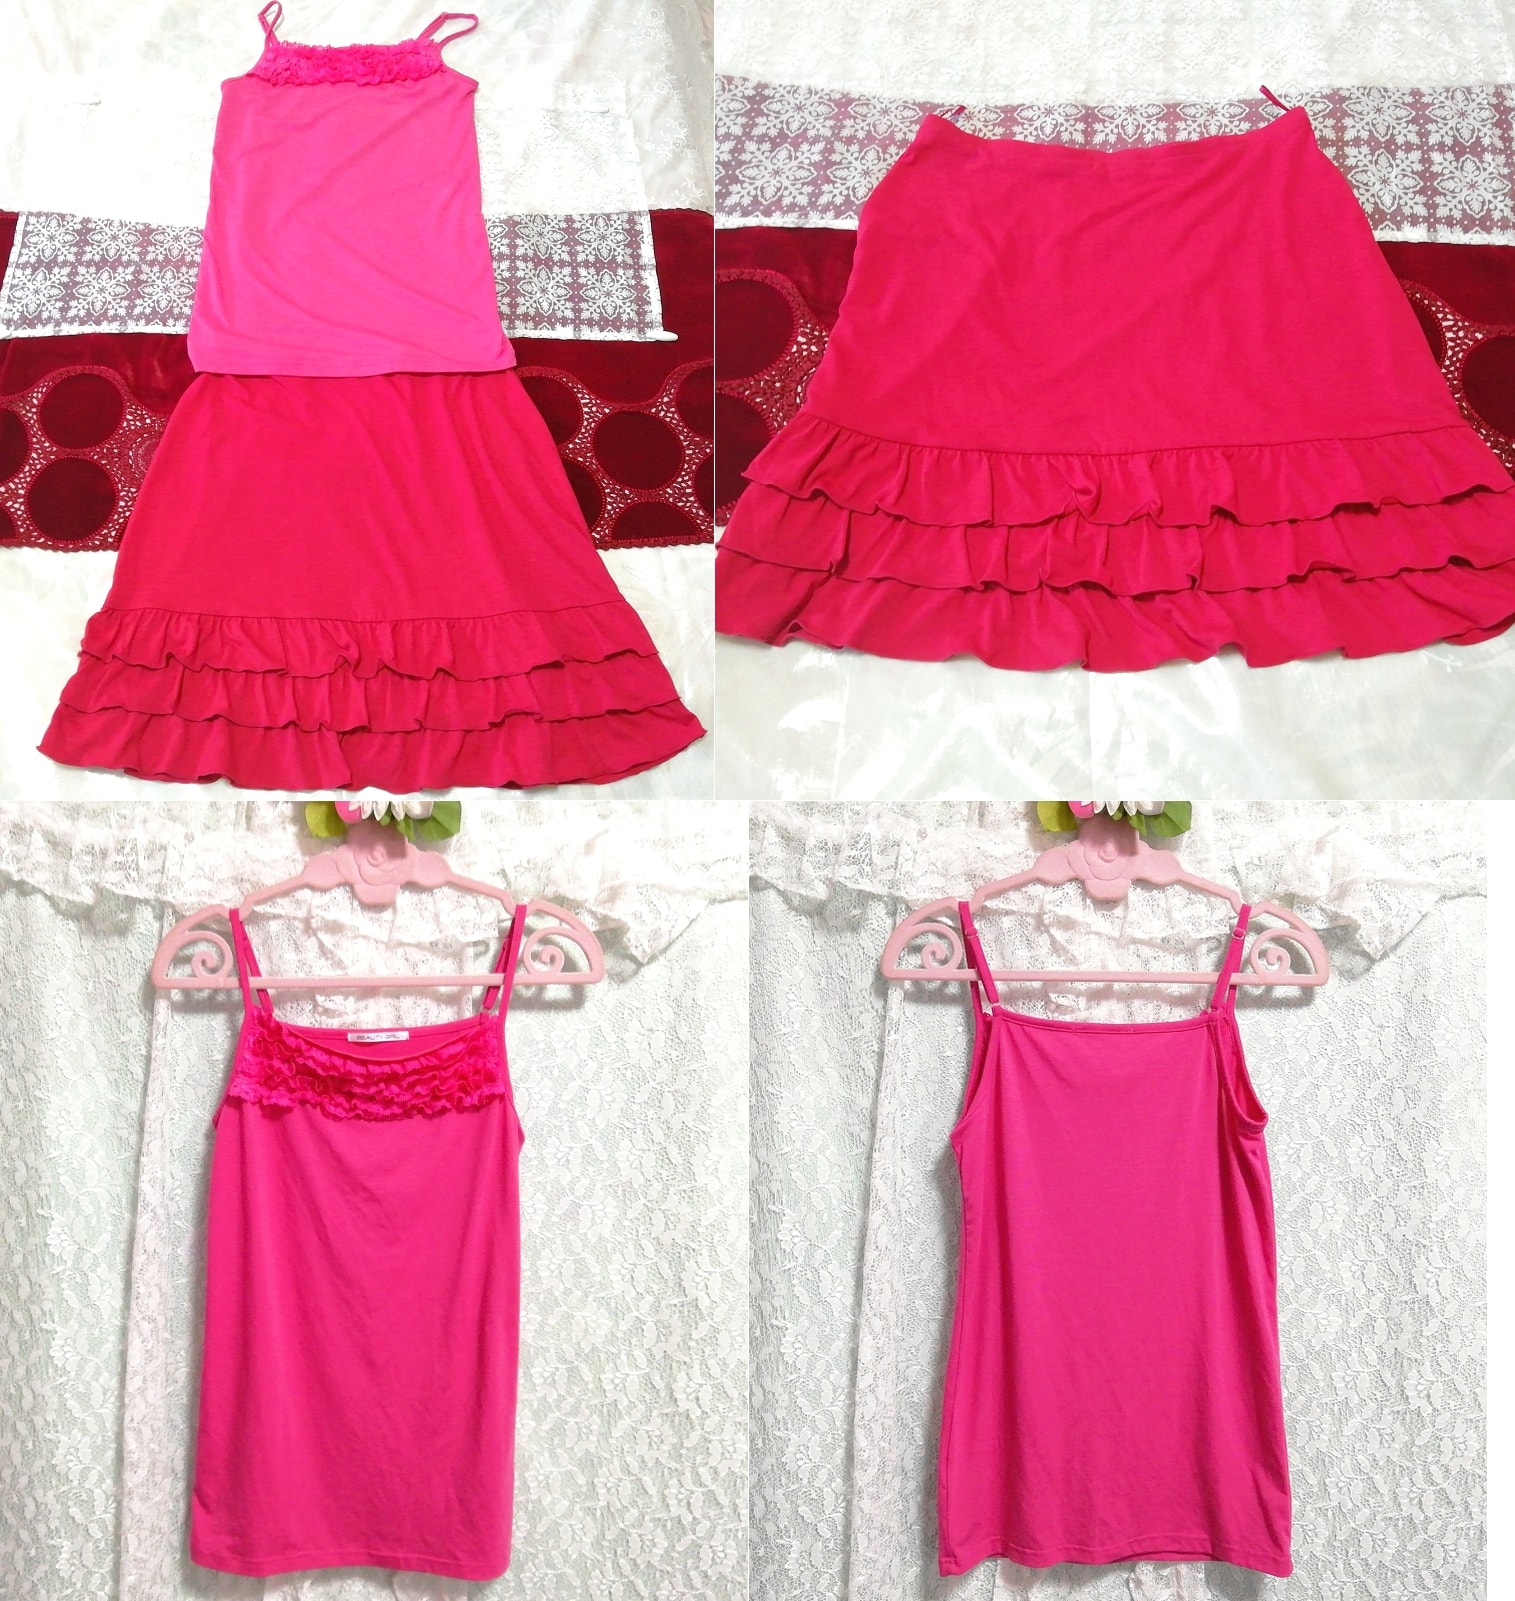 ピンクレースキャミソール ネグリジェ 赤フリルミニスカート 2P Pink lace camisole negligee red frill mini skirt, ファッション, レディースファッション, ナイトウエア、パジャマ